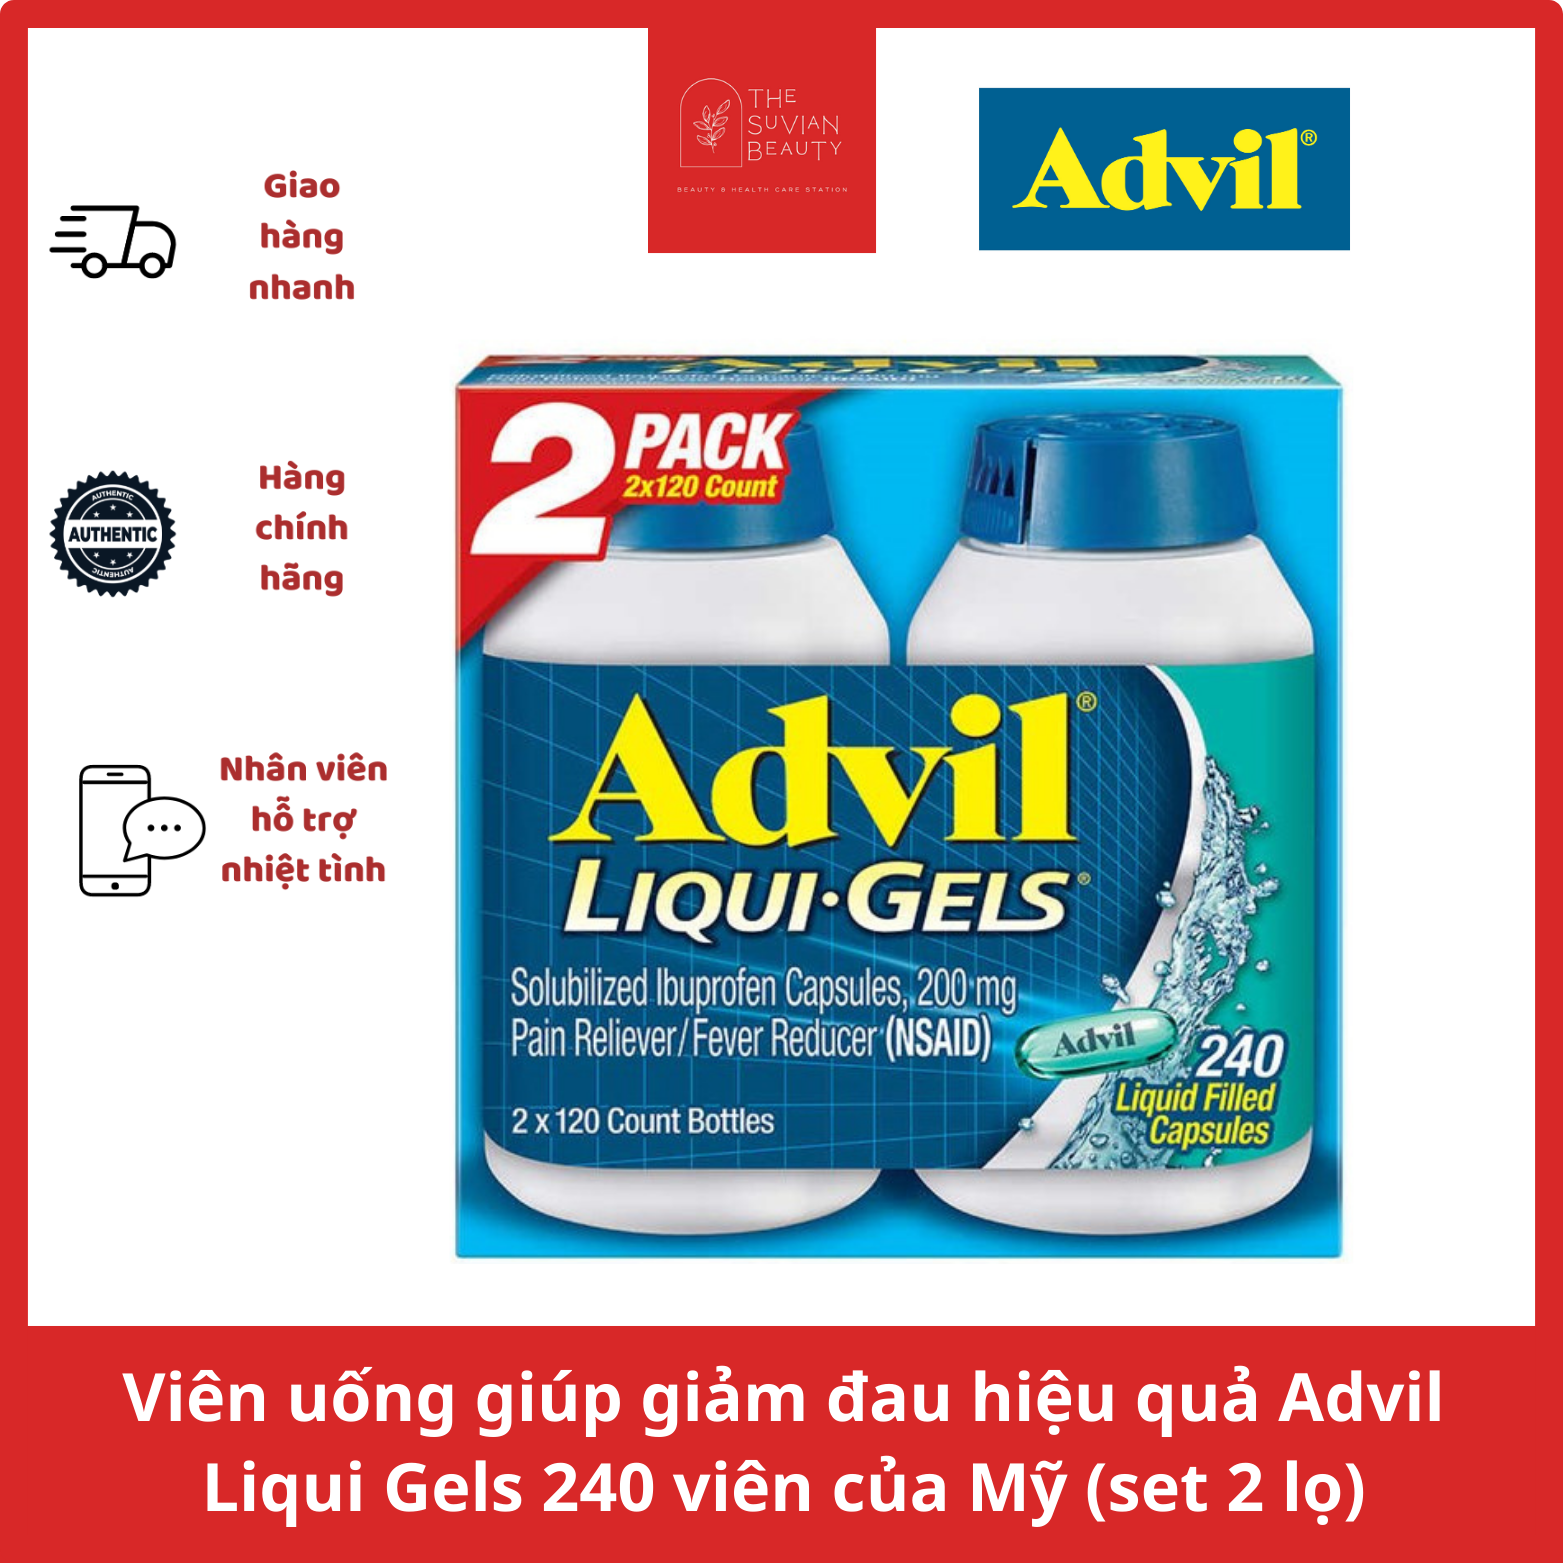 Viên uống giúp giảm đau hiệu quả Advil Liqui Gels 240 viên của Mỹ (set 2 hũ)